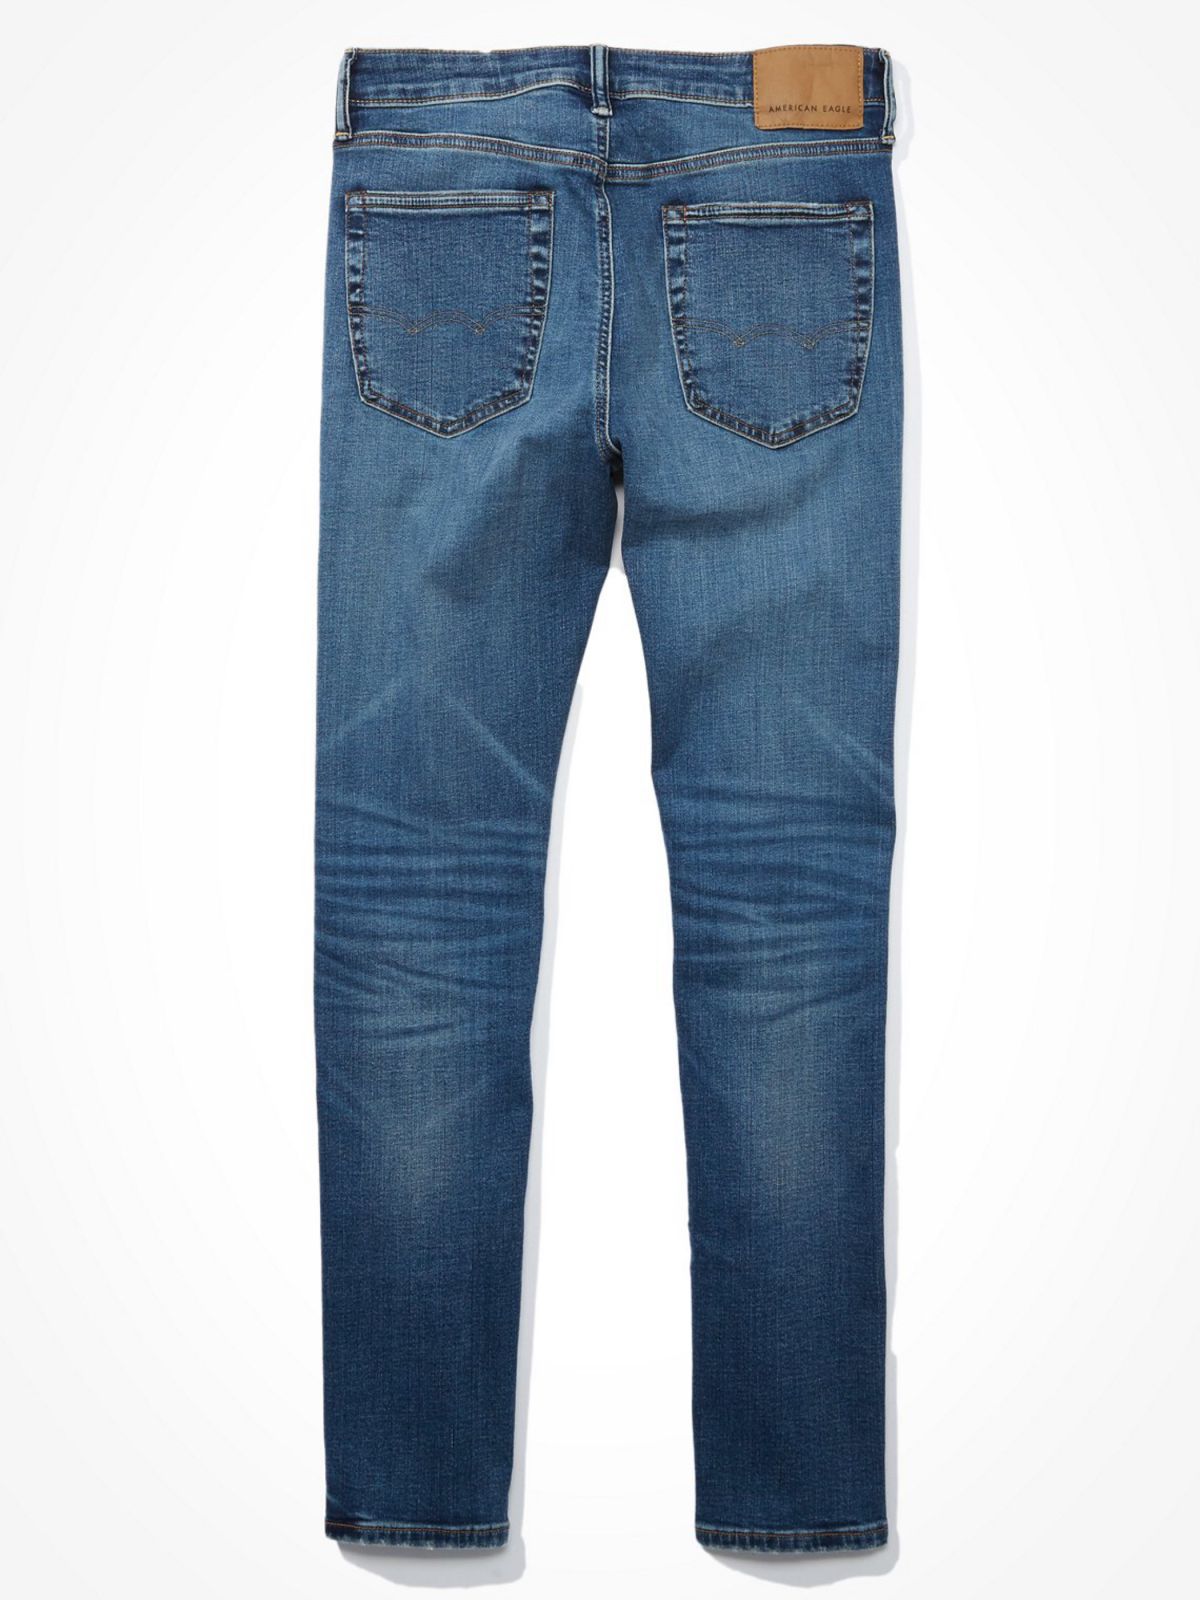  ג'ינס ארוך עם הבהרות Slim Fit / גברים של AMERICAN EAGLE